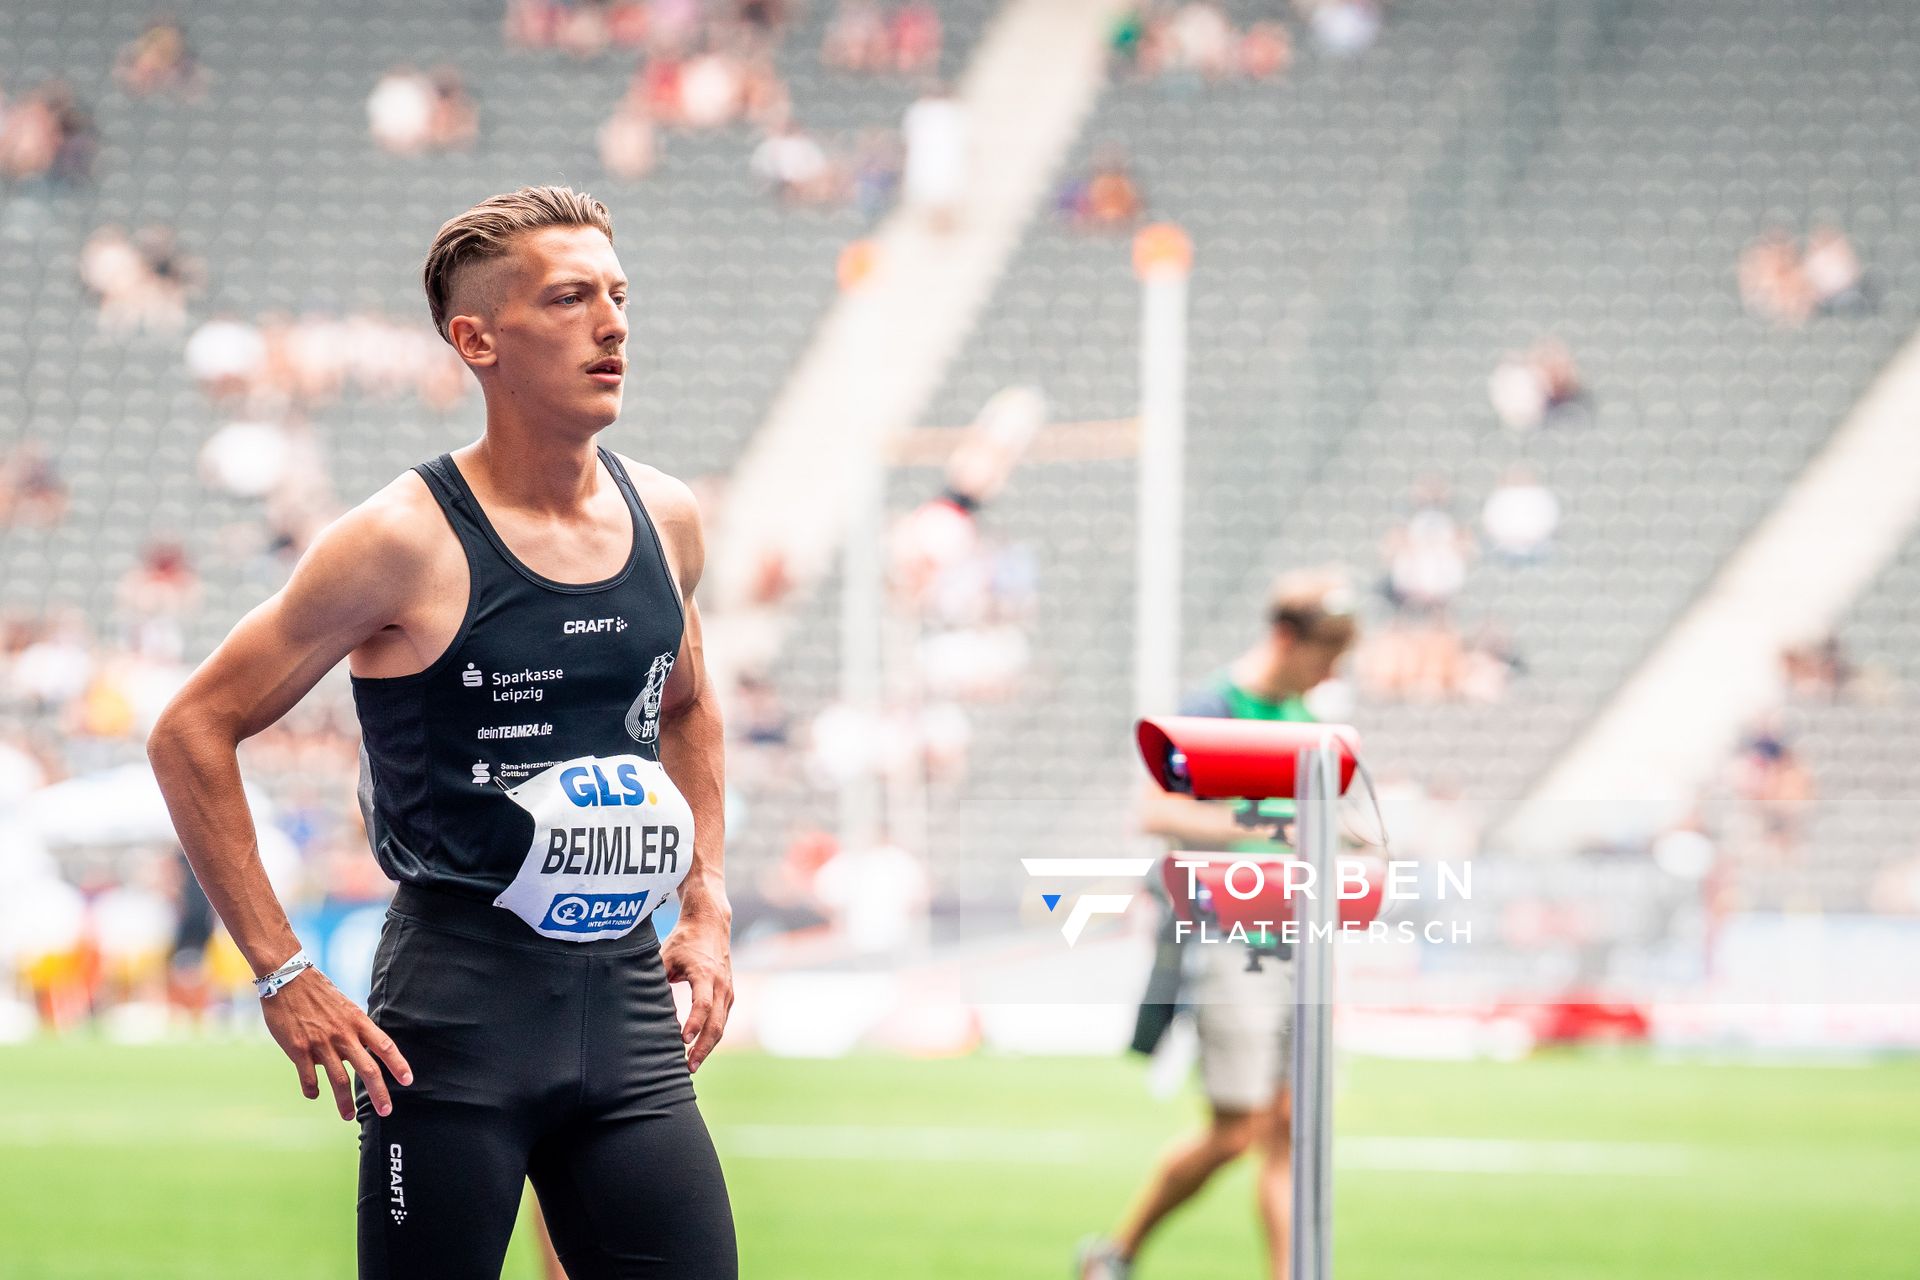 Artur Beimler (SC DHfK Leipzig e.V.) beim 800m Start waehrend der deutschen Leichtathletik-Meisterschaften im Olympiastadion am 25.06.2022 in Berlin